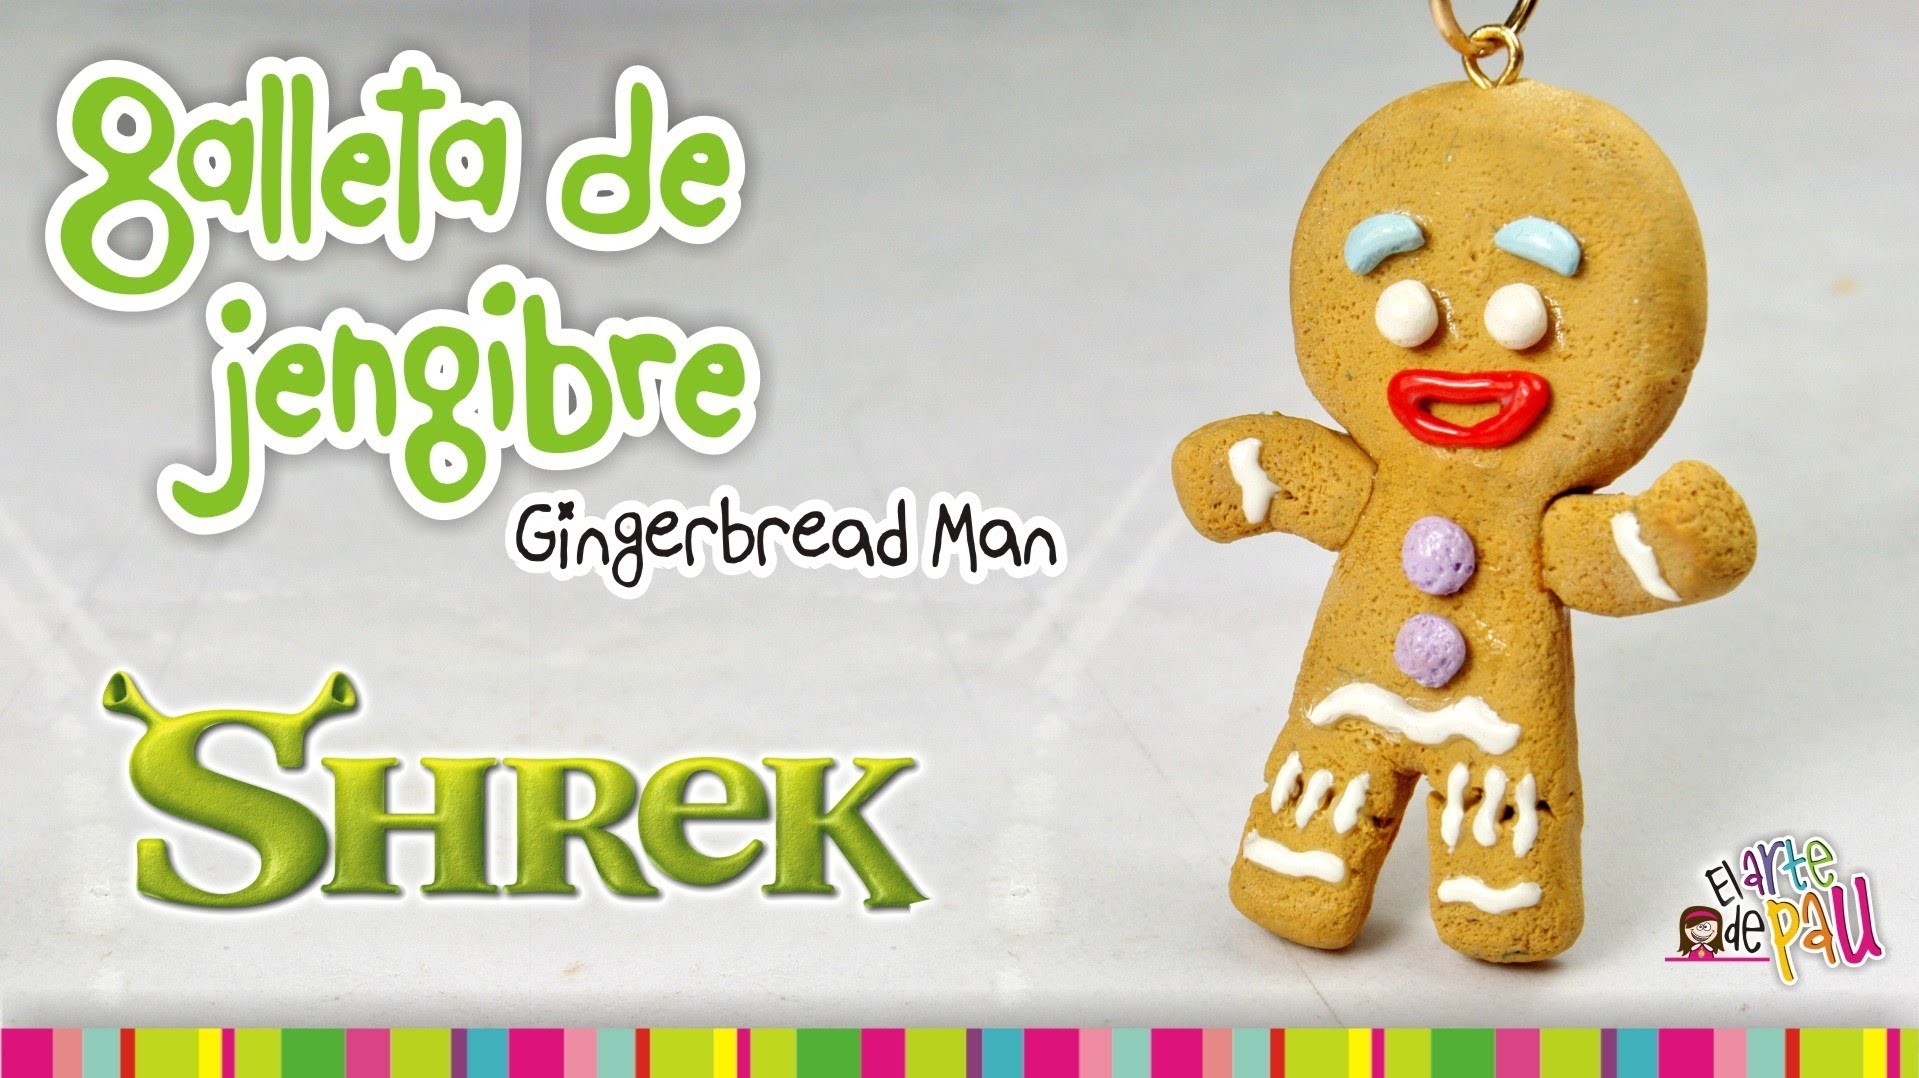 Gingerbread Man Cookie polymer clay tutorial. Galleta de gengibre de arcilla polimérica